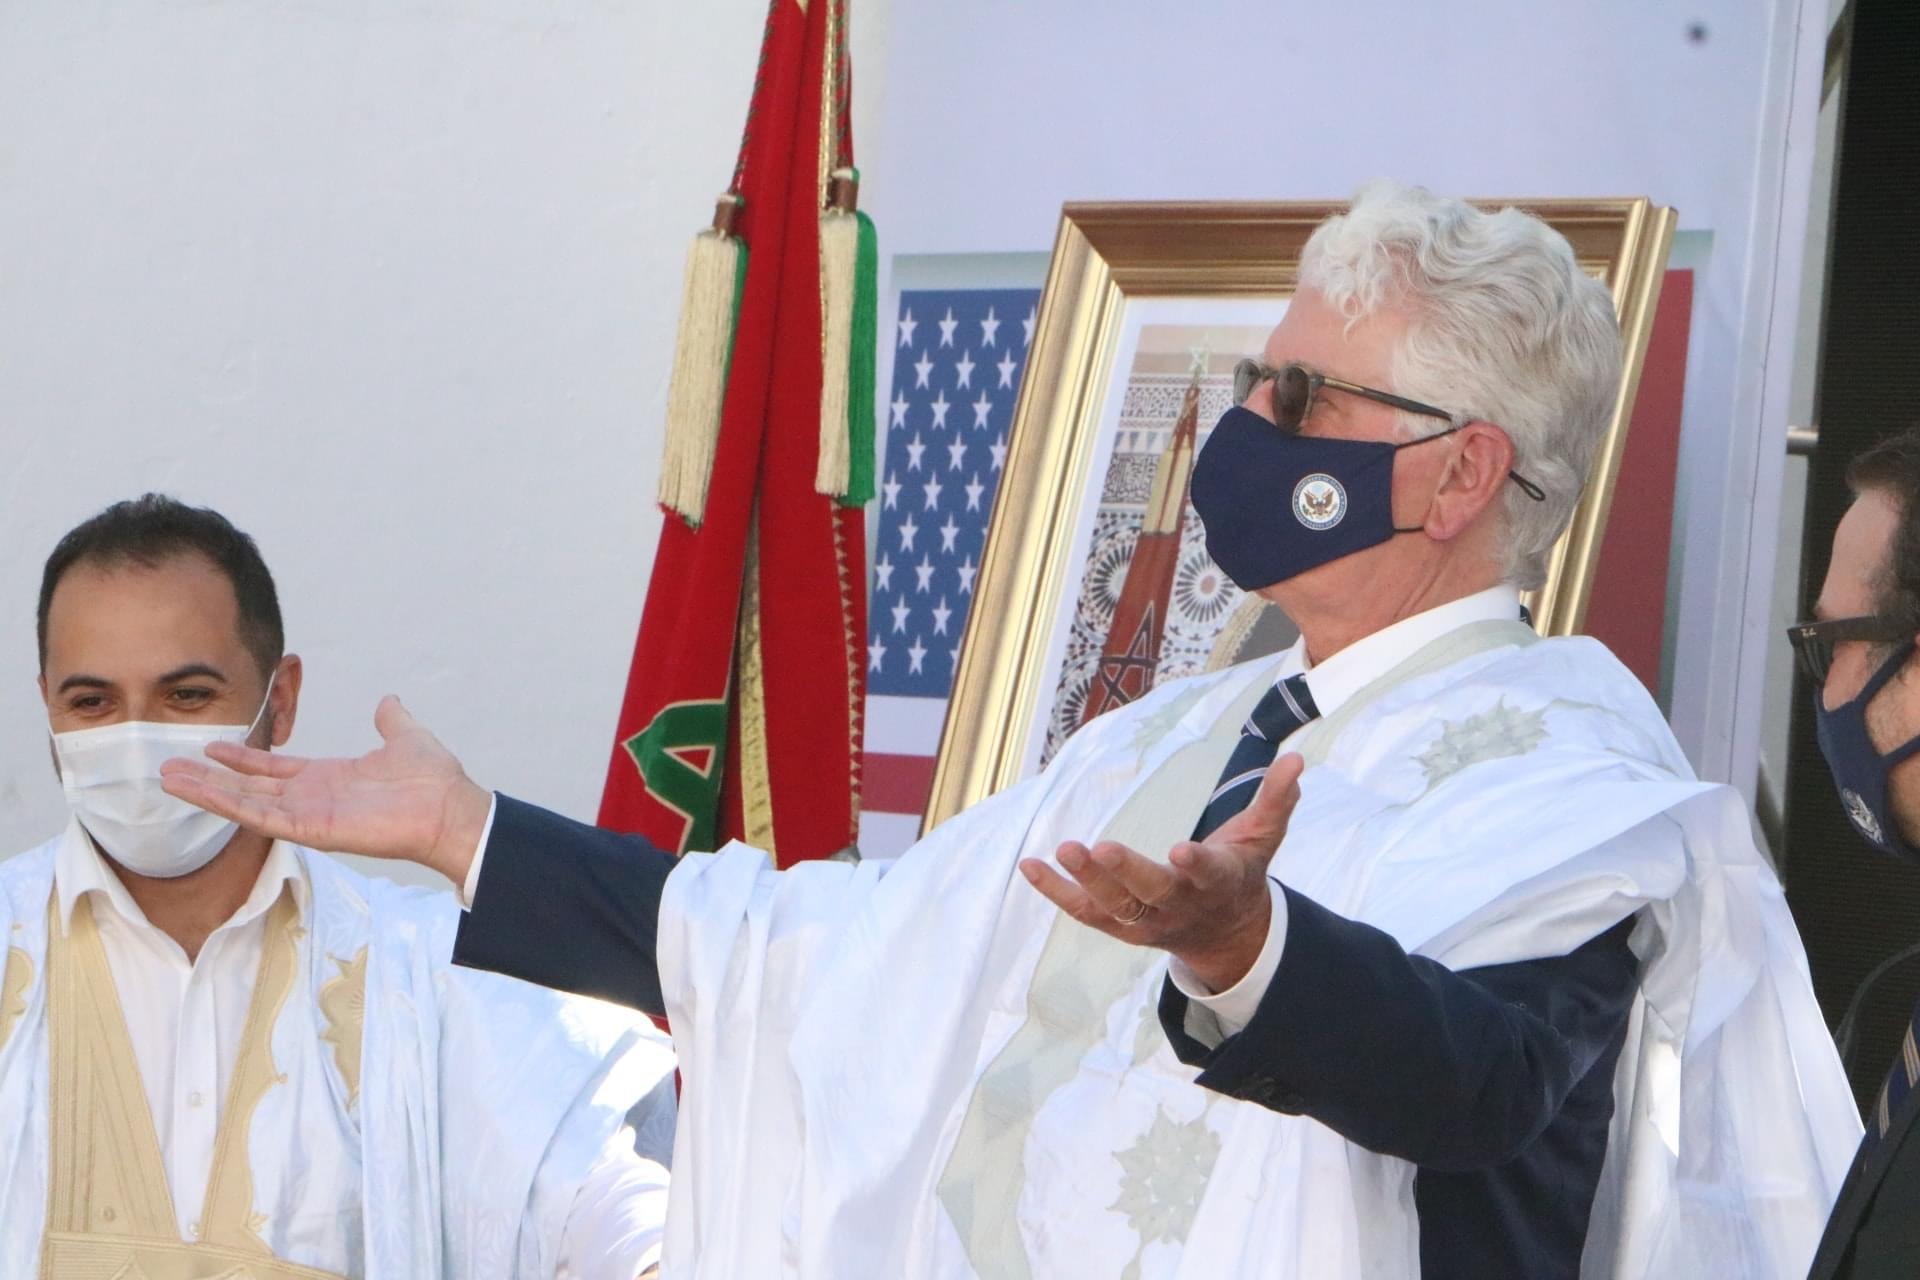 افتتاح القنصلية الأمريكية بالداخلة بمثابة صفحة جديدة مشرقة للمغرب وإفريقيا